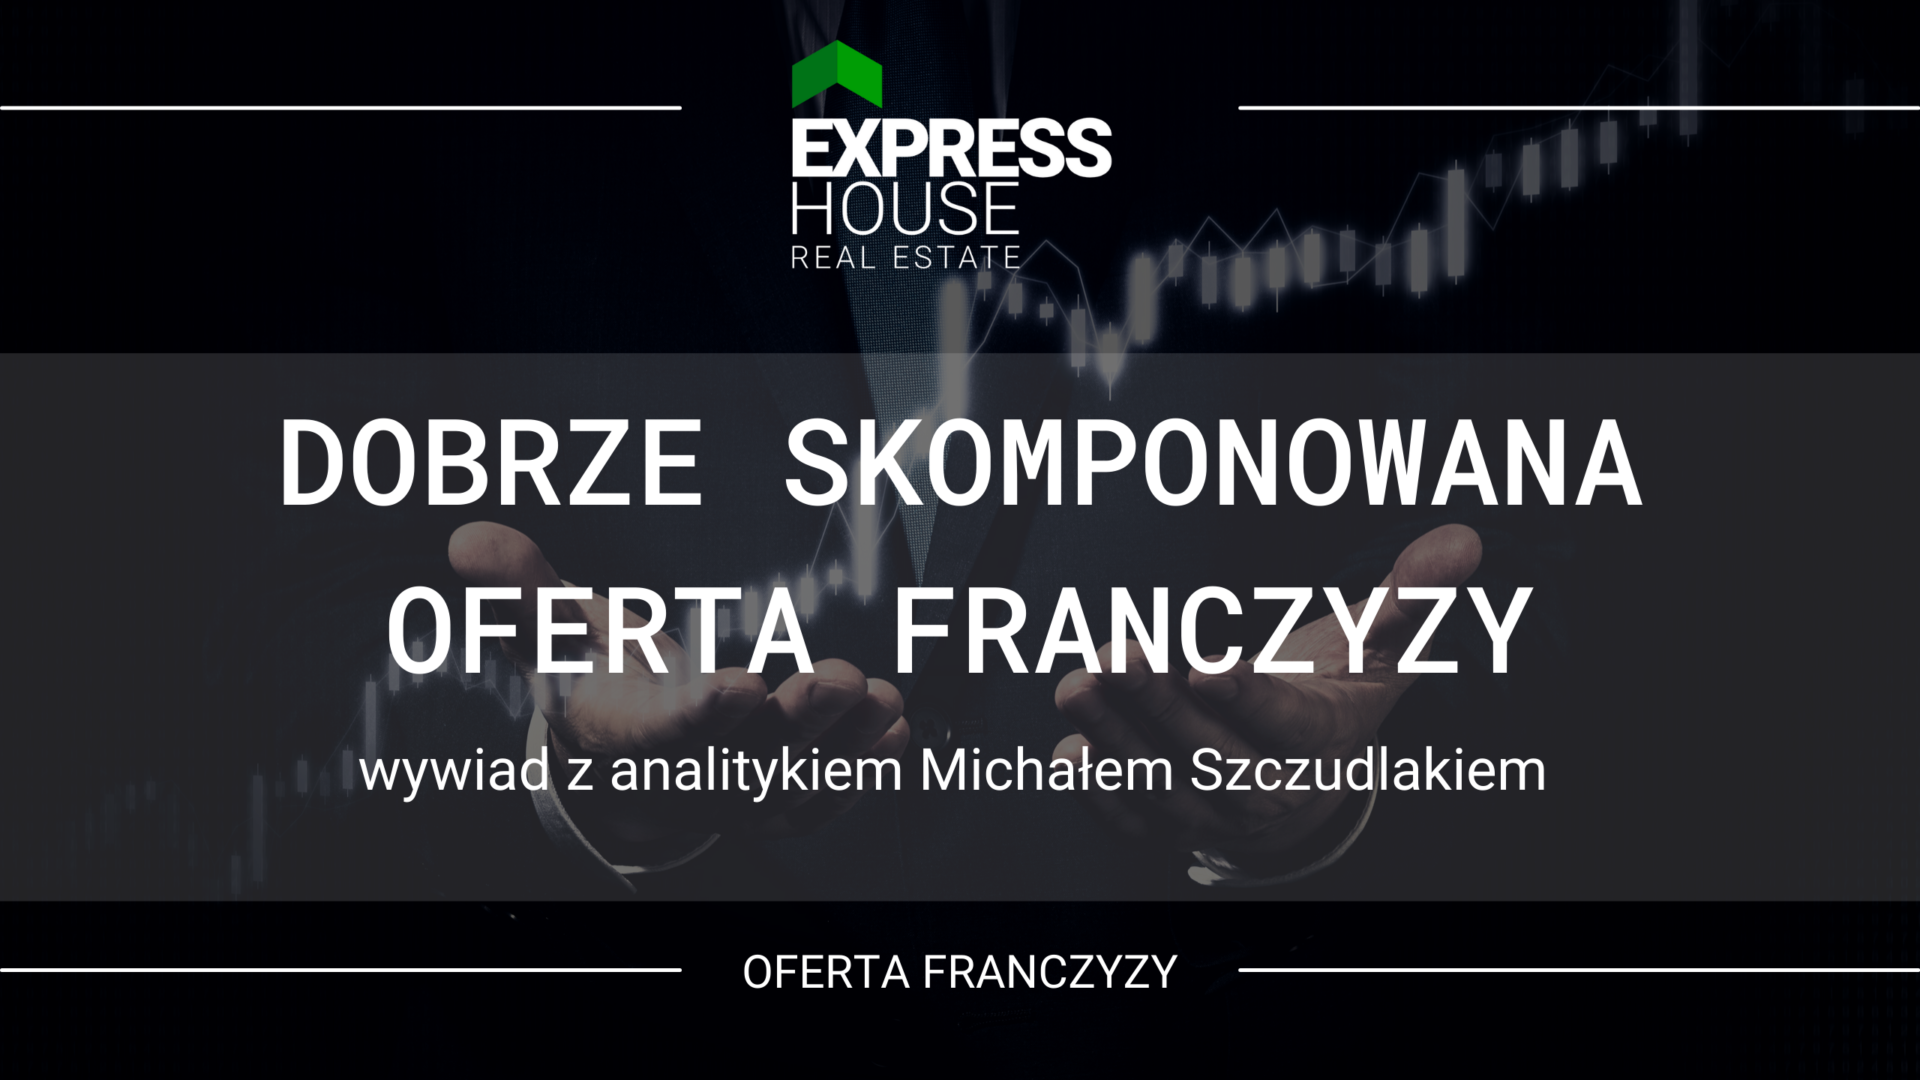 Dobrze skomponowana oferta franczyzy Express House - wywiad z analitykiem Michałem Szczudlakiem